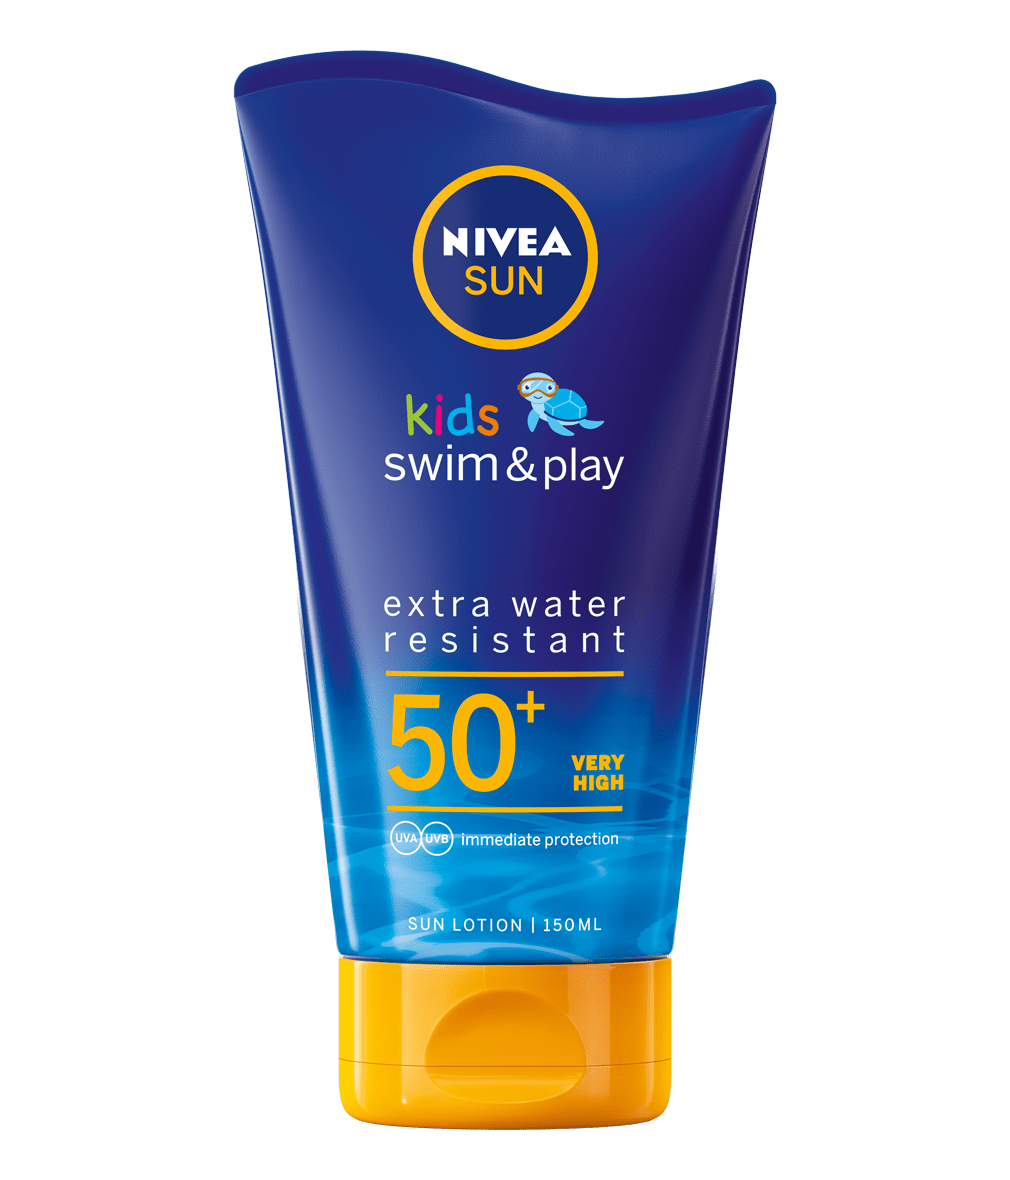 Nivea Sun Kids Swim & Play Sun Lotion Spf50+ Sunscreen 150ml - myhoodmarket